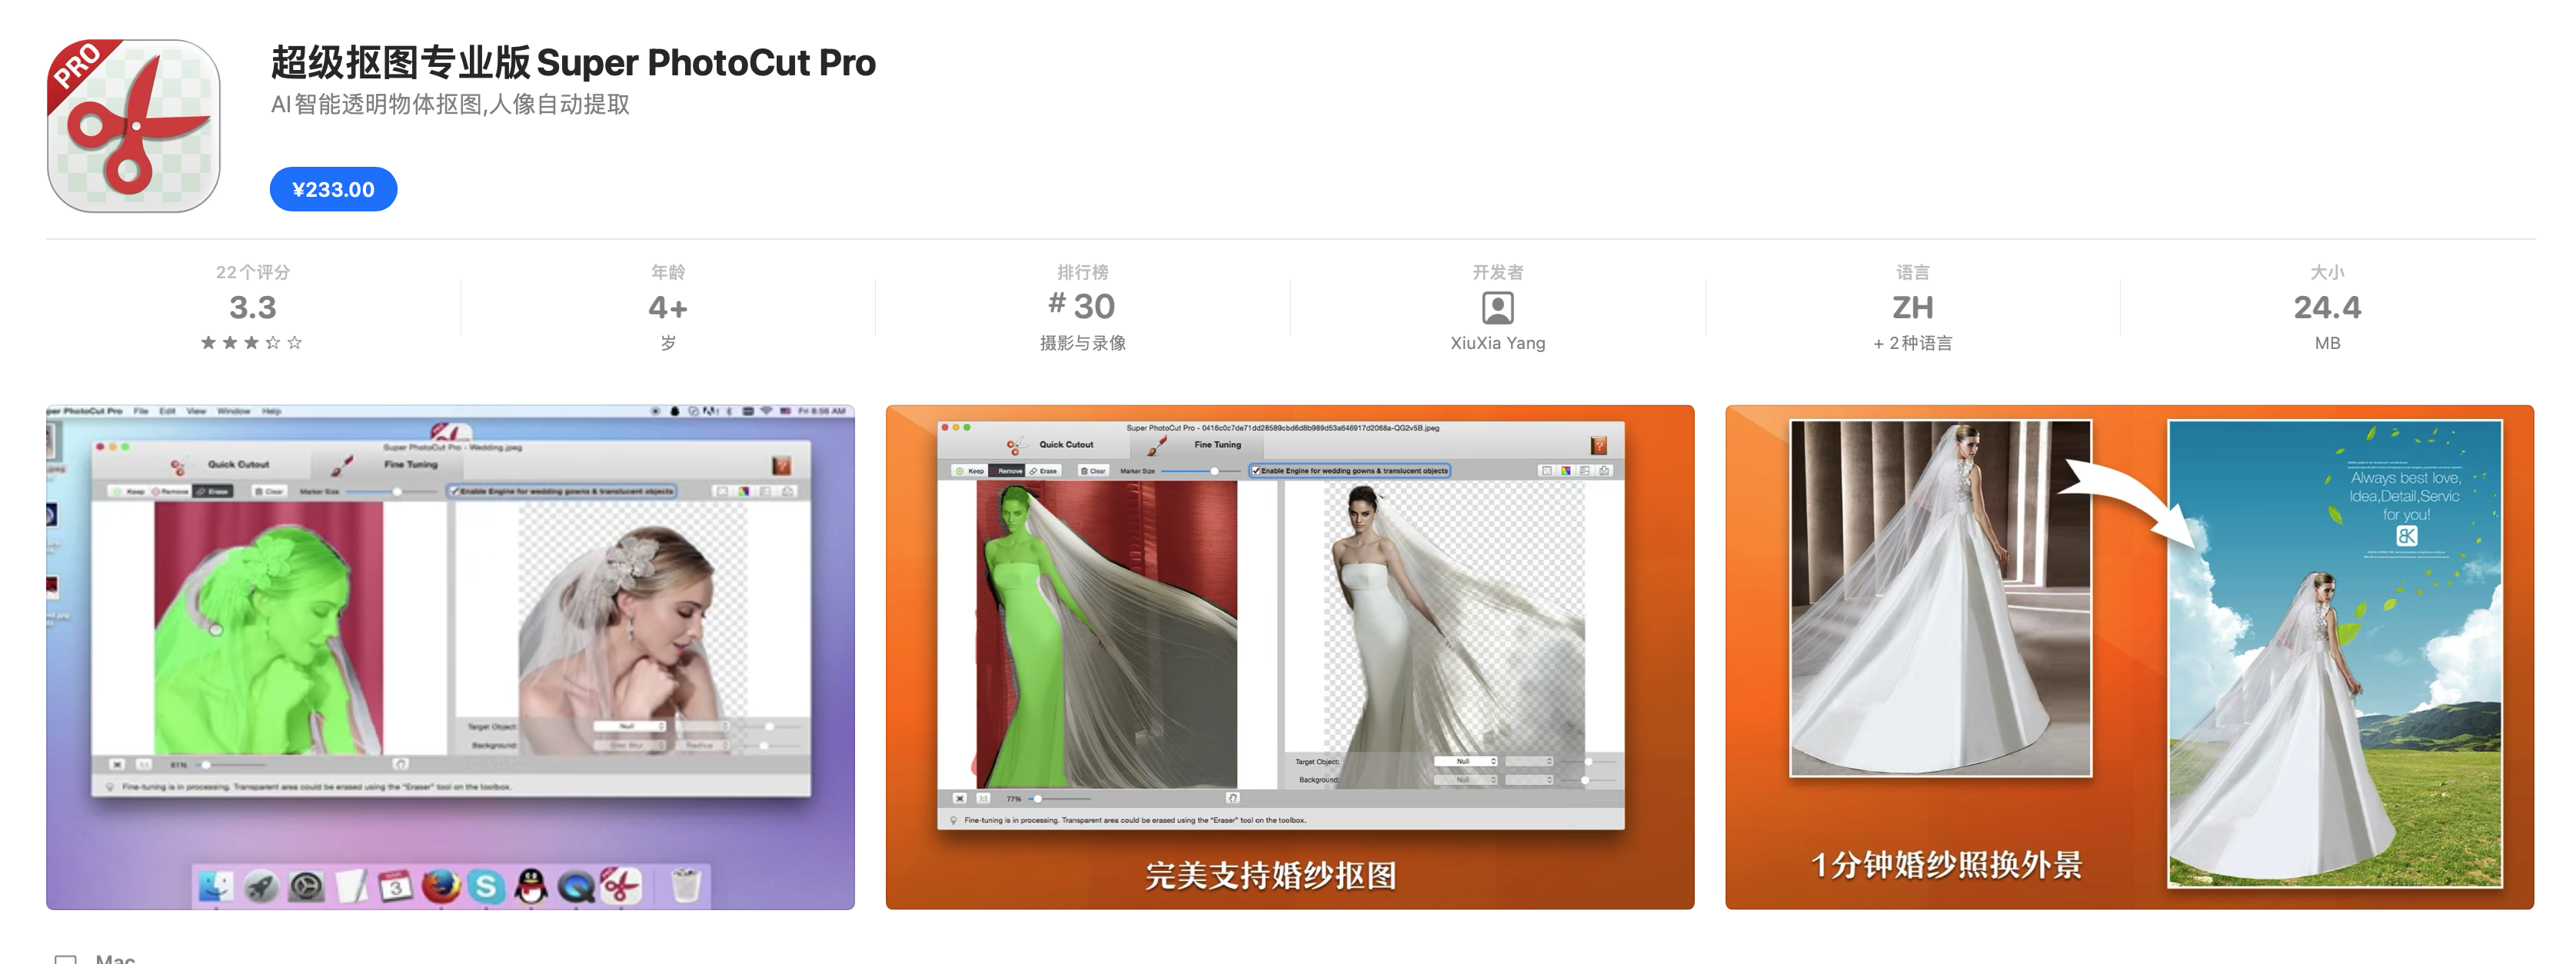 Super PhotoCut Pro v2.8.8 中文破解版 快速图片抠图工具